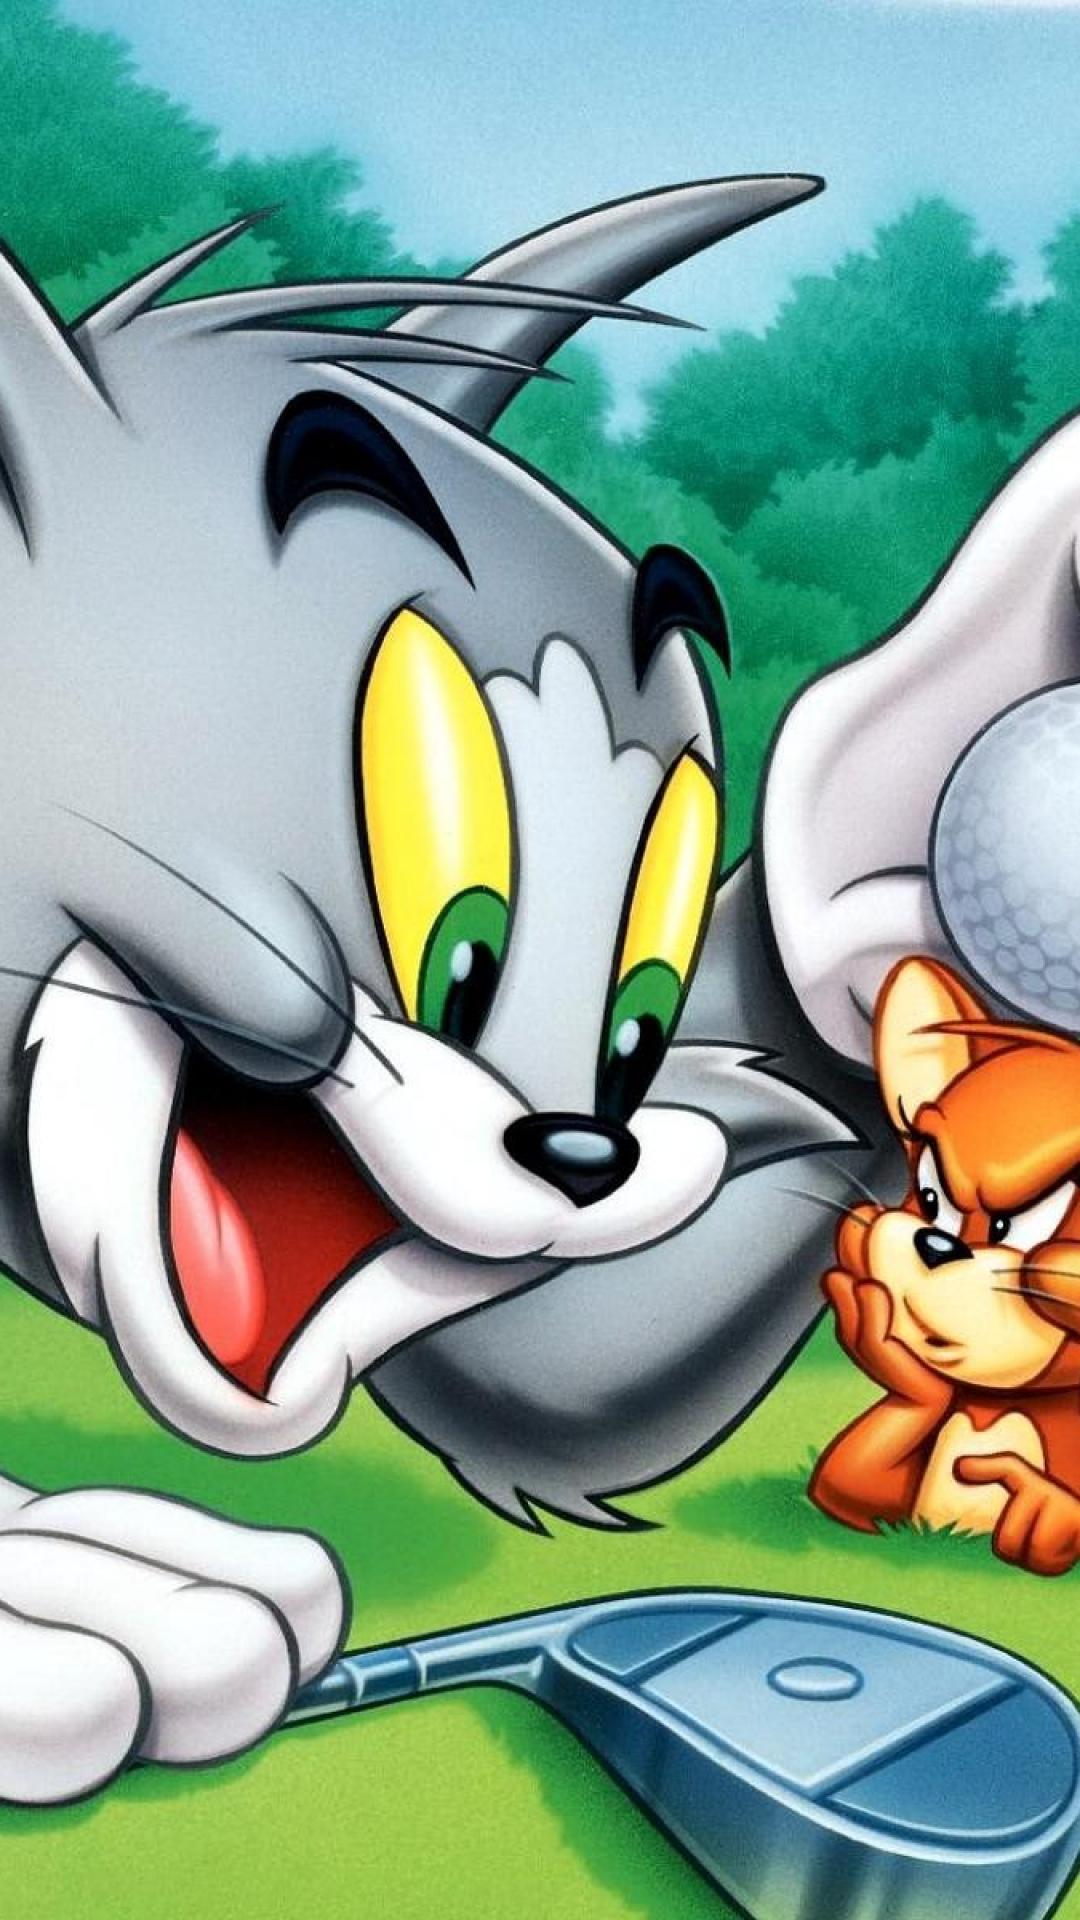 Cuồng phim-Review - Tom and Jerry Đây là loạt phim hoạt hình kinh điển đã  khiến bao thế hệ say mê, dù cả phim hầu như không có lời thoại. Hai nhân